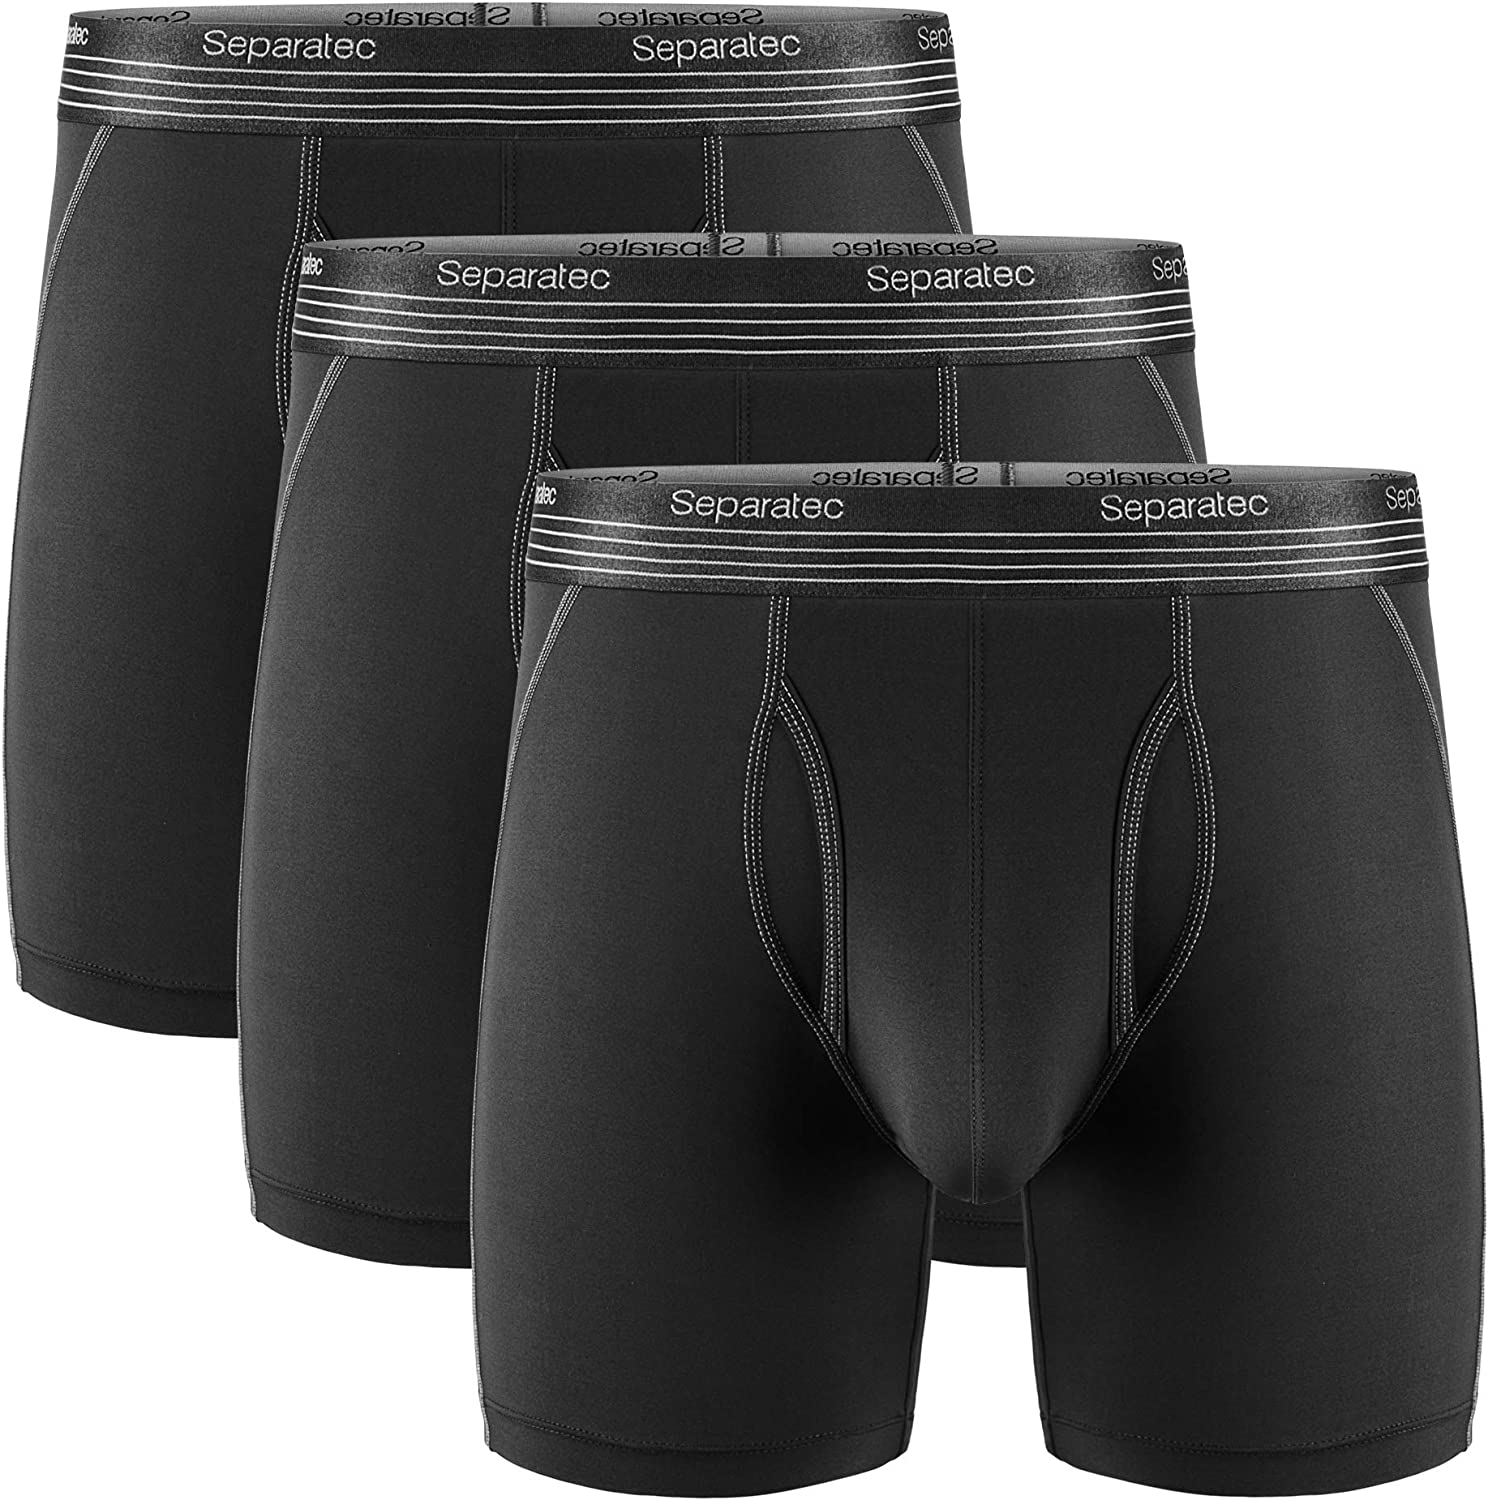 Buy Separatec Men's Underwear Dual Pouch Active Sport Quick Dry 8 Camo  Solid Long Leg Boxer Briefs 2 Pack online